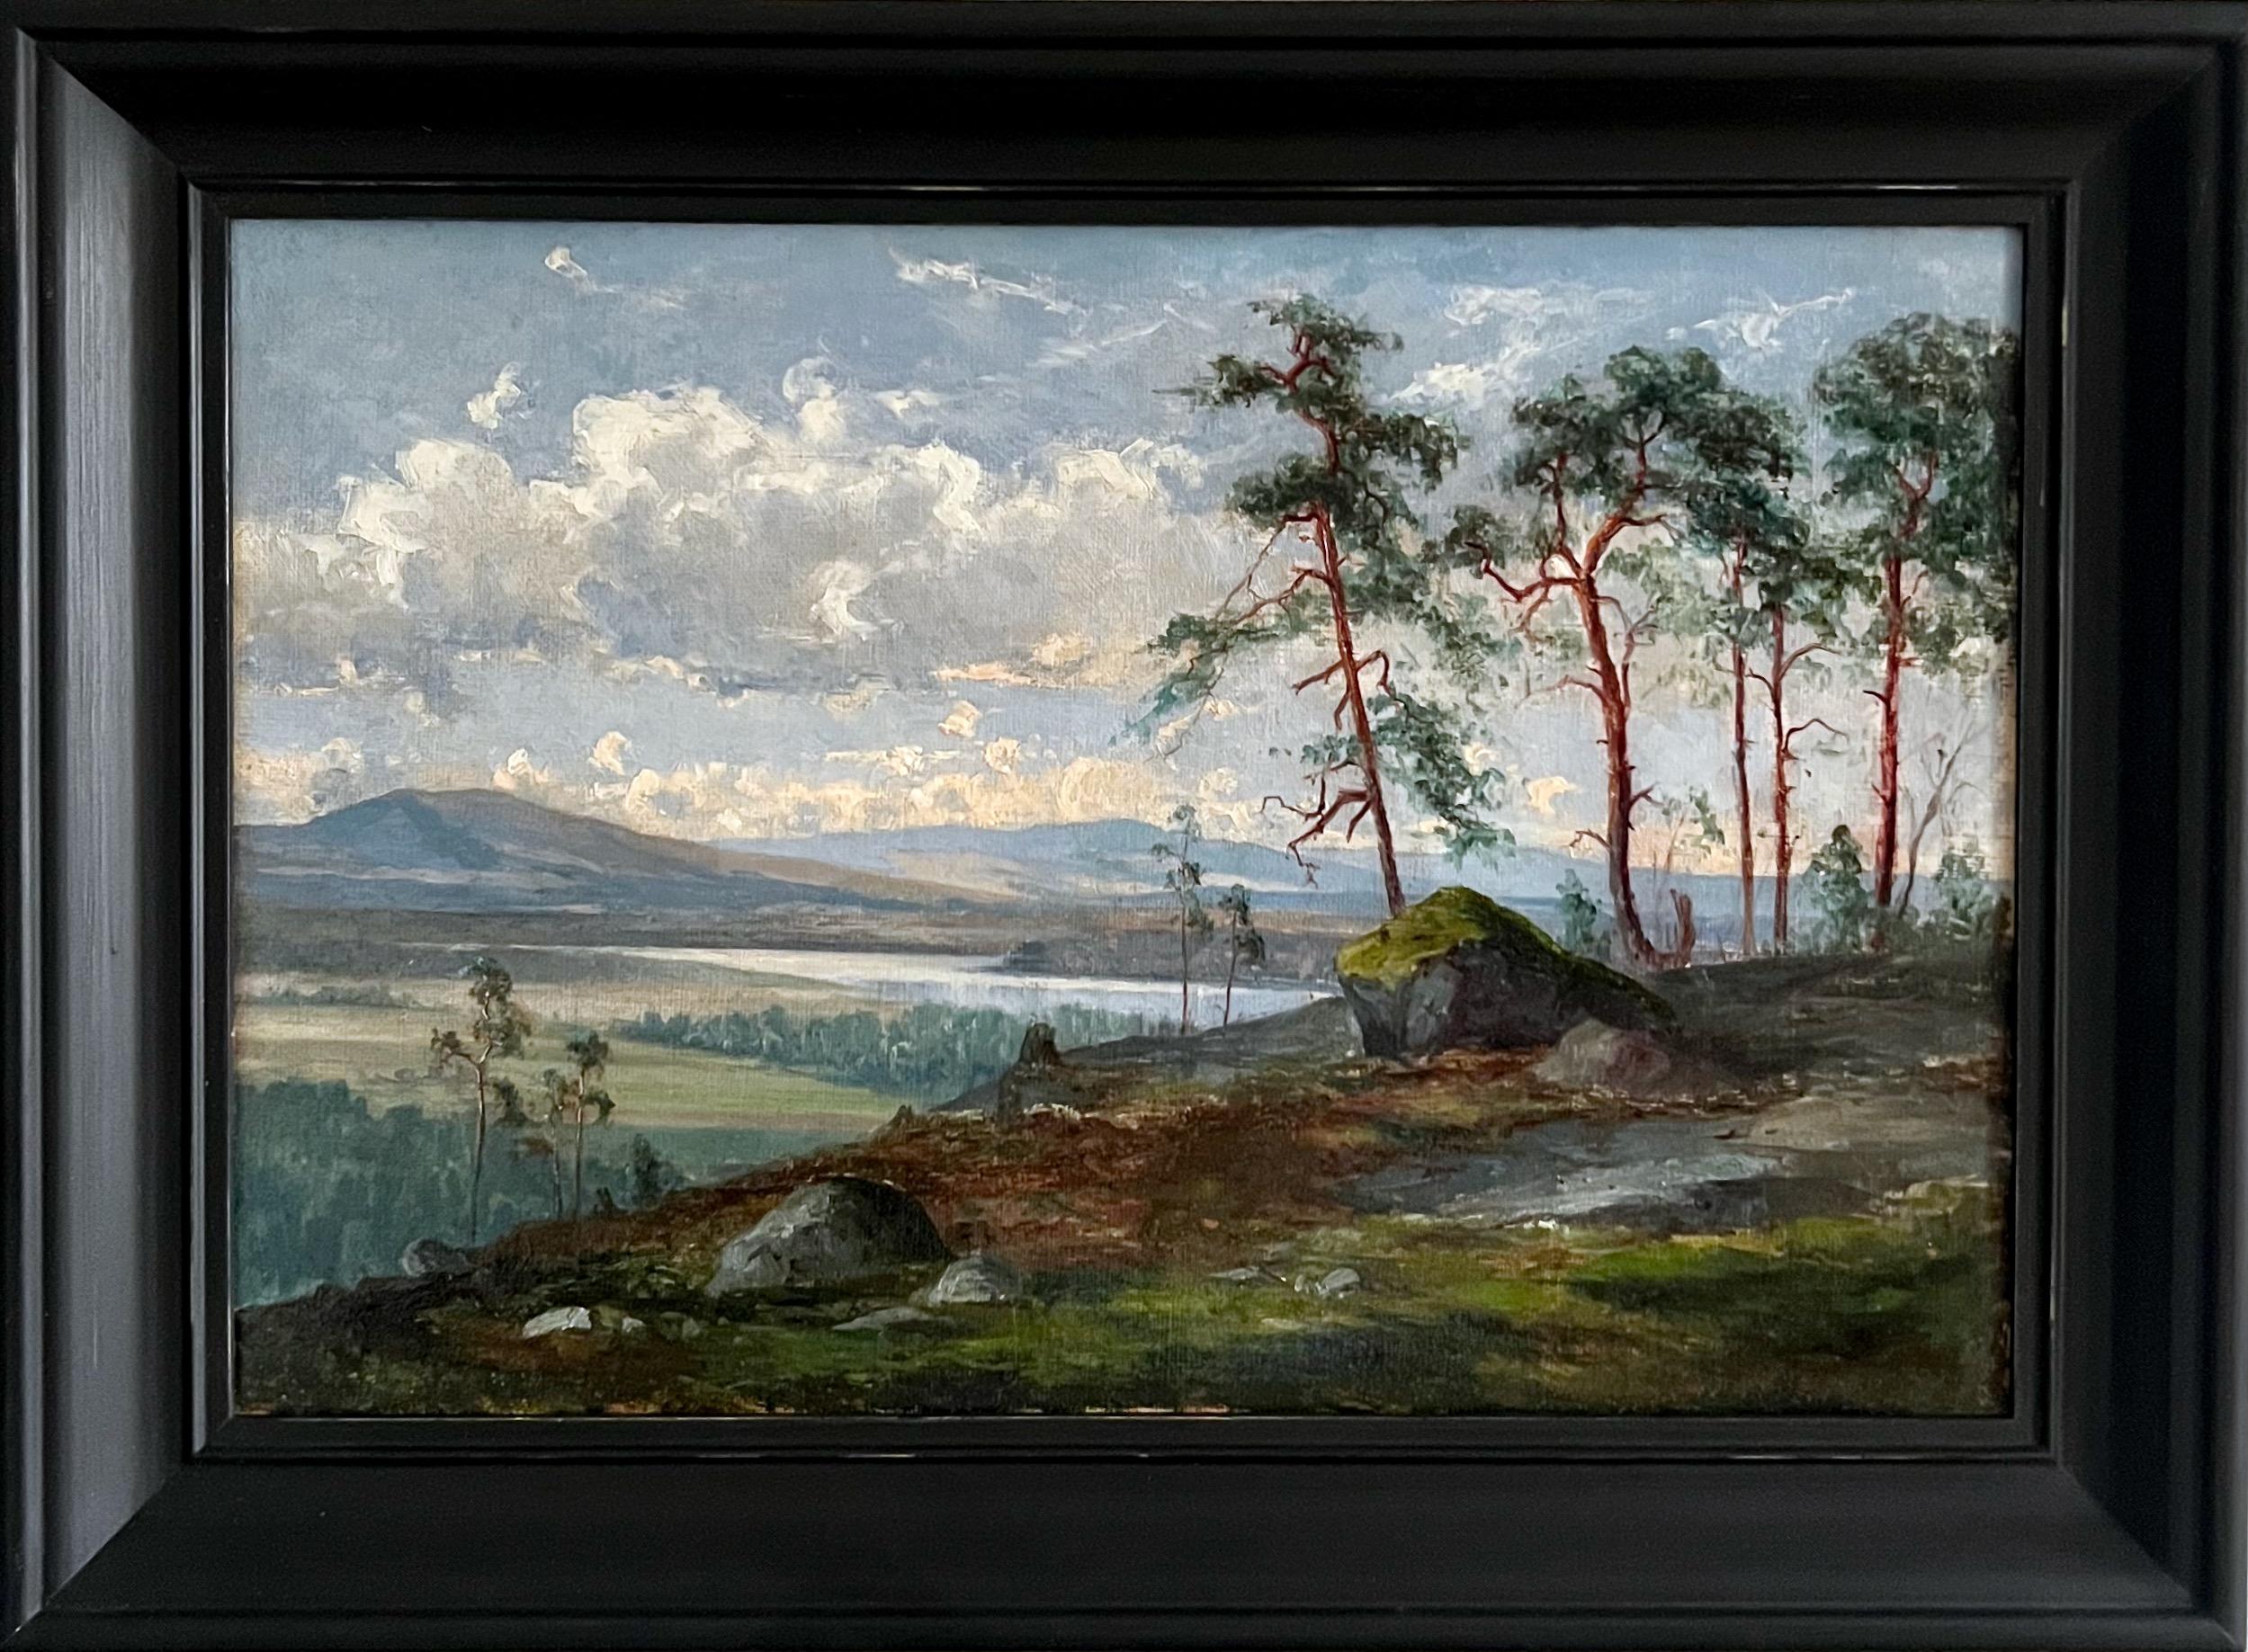 Hjalmar Falk Landscape Painting - Skäckerfjällen Seen From Kolåsen, Mountain View, 19th century, Oil on canvas